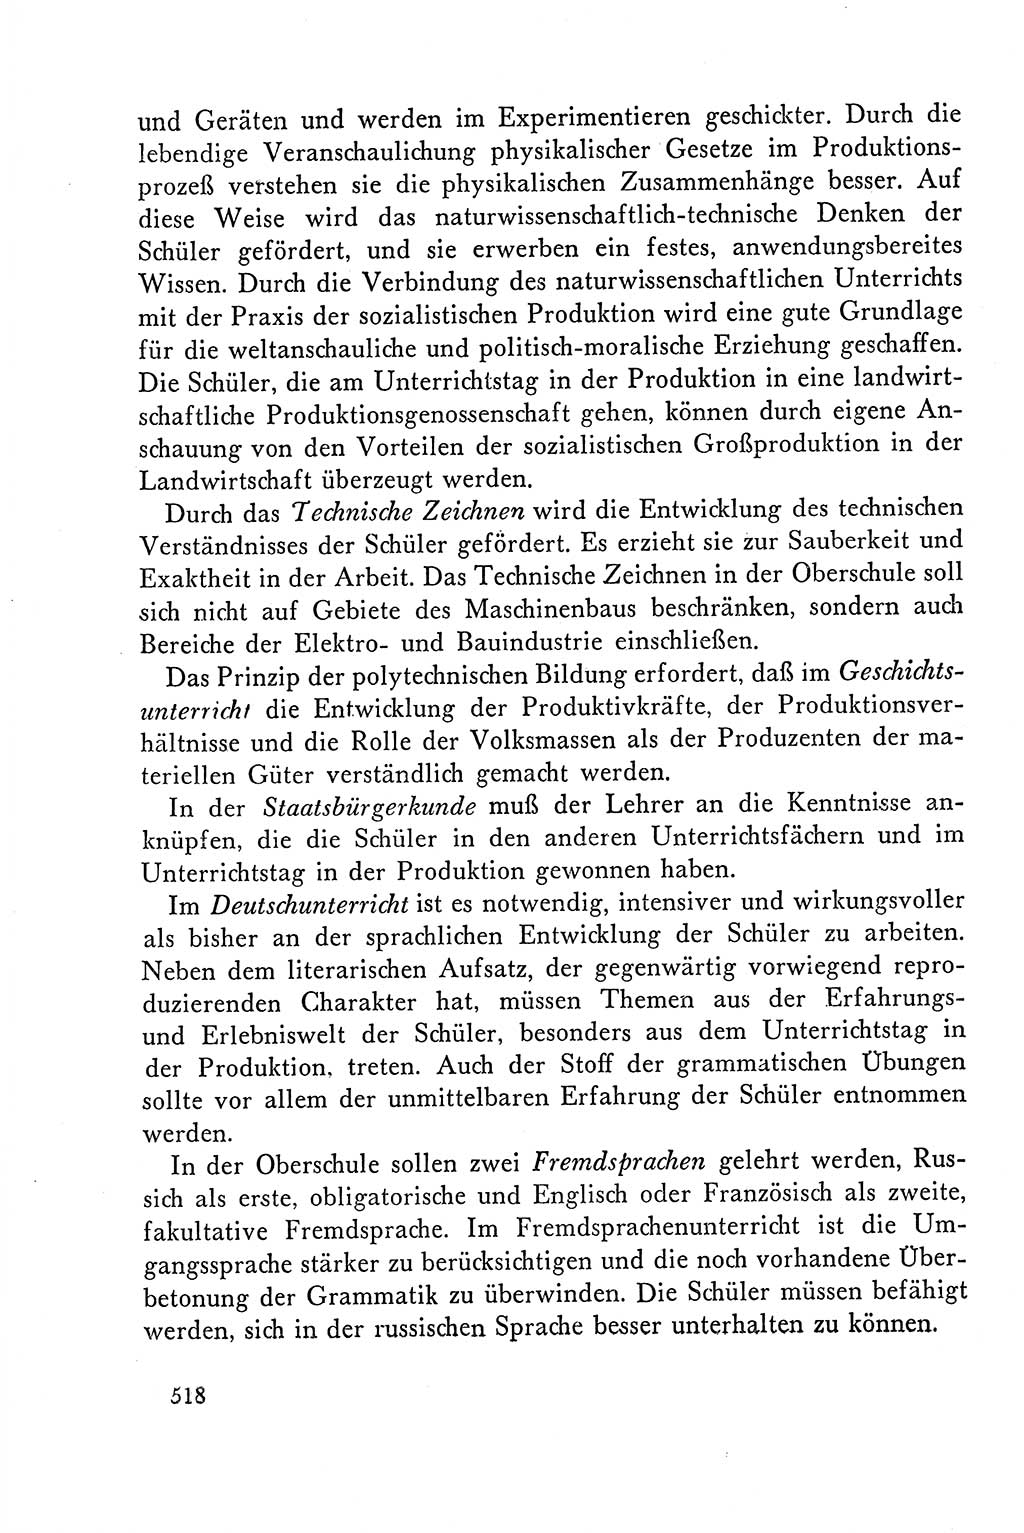 Dokumente der Sozialistischen Einheitspartei Deutschlands (SED) [Deutsche Demokratische Republik (DDR)] 1958-1959, Seite 518 (Dok. SED DDR 1958-1959, S. 518)